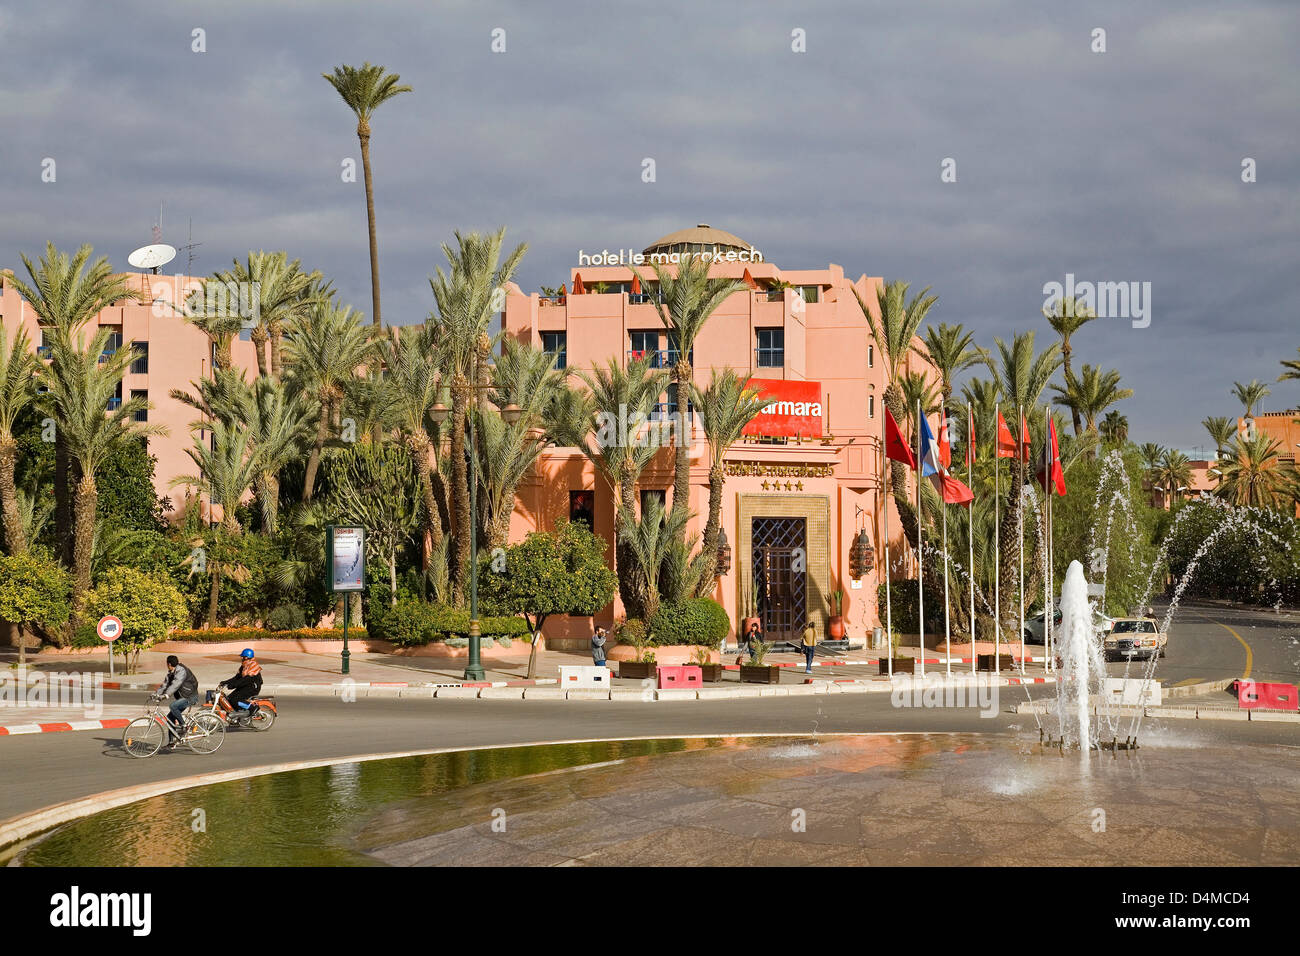 africa, morocco, marrakech, new town, hotel le marrakech Stock Photo